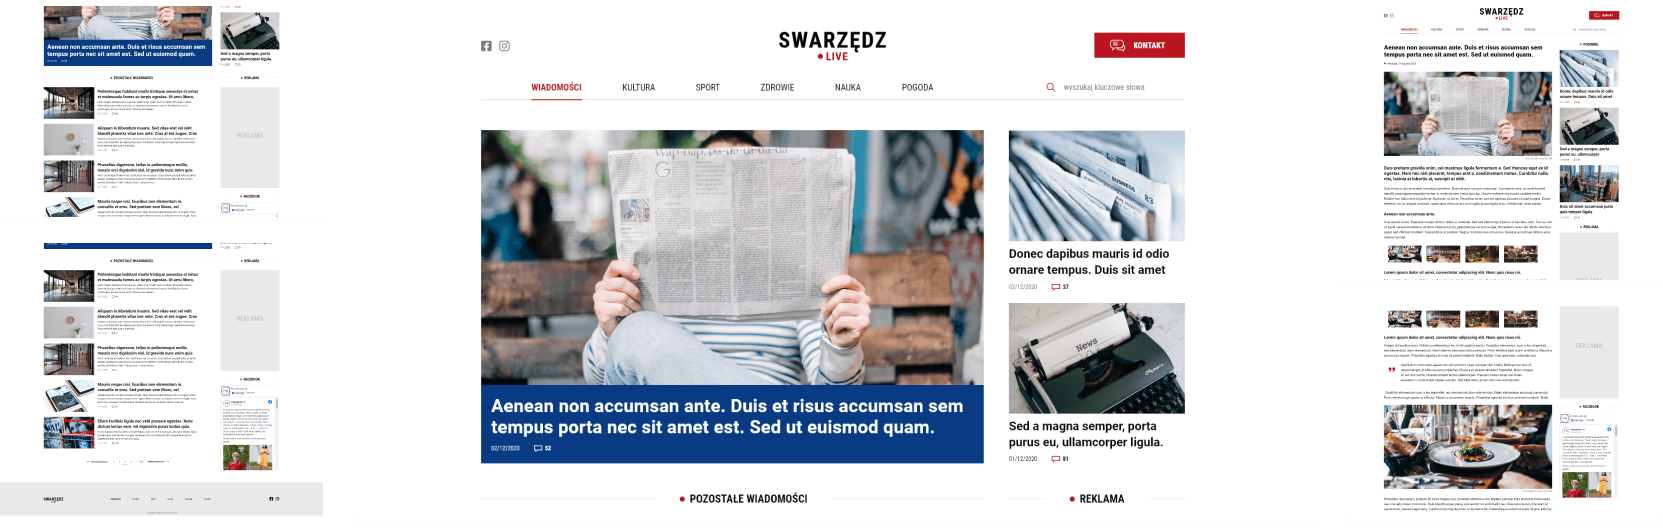 Strona internetowa swarzedzlive.pl